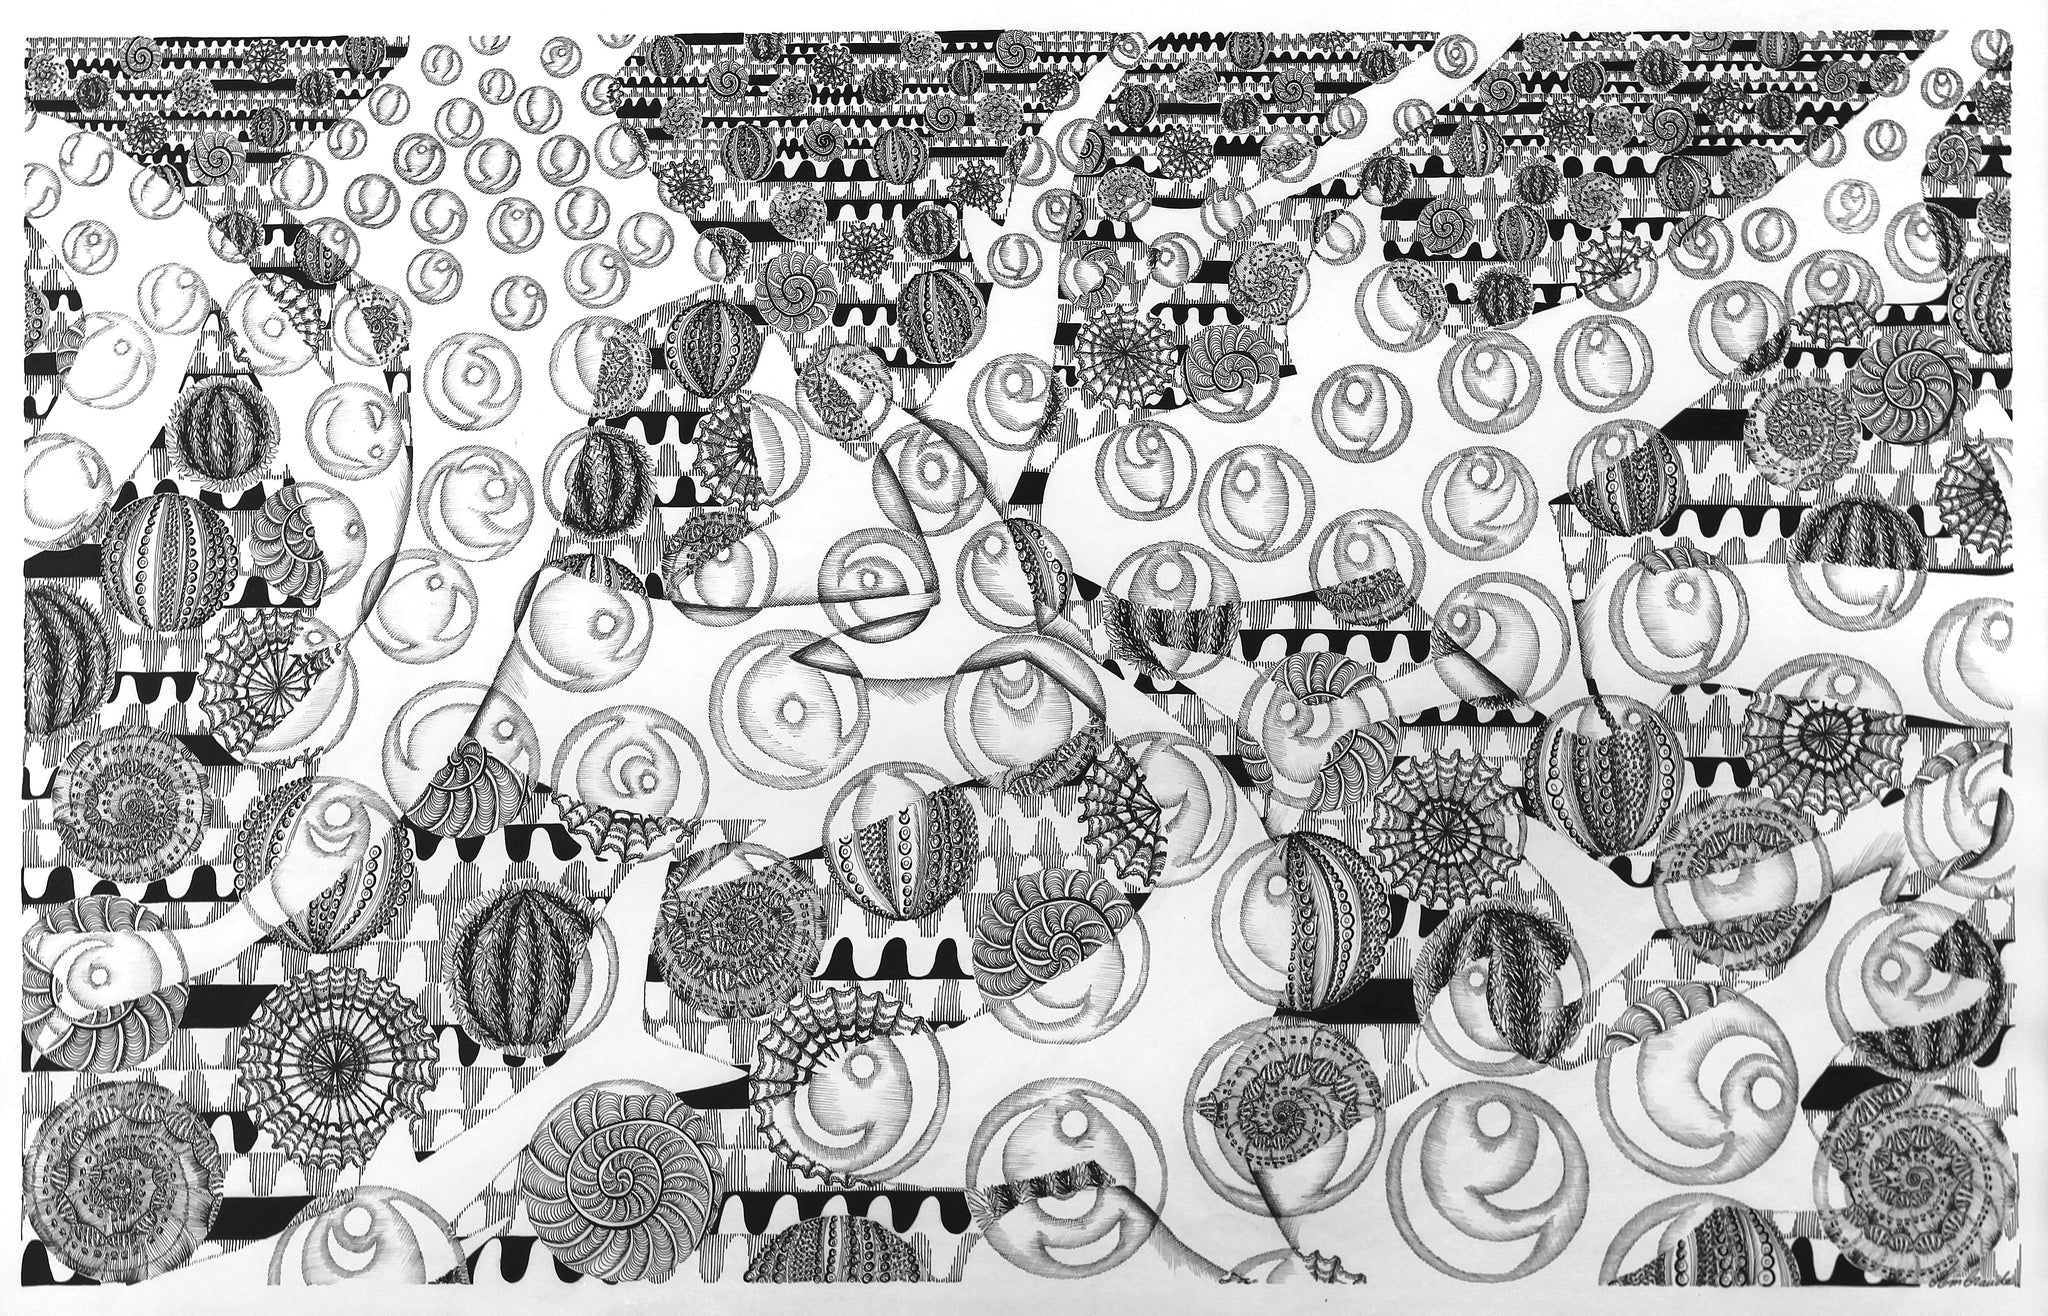 Oeuvre Originale Ambraude, de l'Art Nouveau Post Exotique. "Requins-coquillage": encre de Chine sur papier, encre de Chine sur papier, 94 x 59 cm. Un image peut en cacher une autre: scène de requins qui s'agitent dans l'ocean, formant des bulles d'aire dans une eau profonde animée de coquillages, oursins... | Art Nouveau Post Exotique | Art à la Thématique Animalière et Océanique | Requins en mouvement | Bulle d'aire | Oursin | Coquillage | Biodiversité